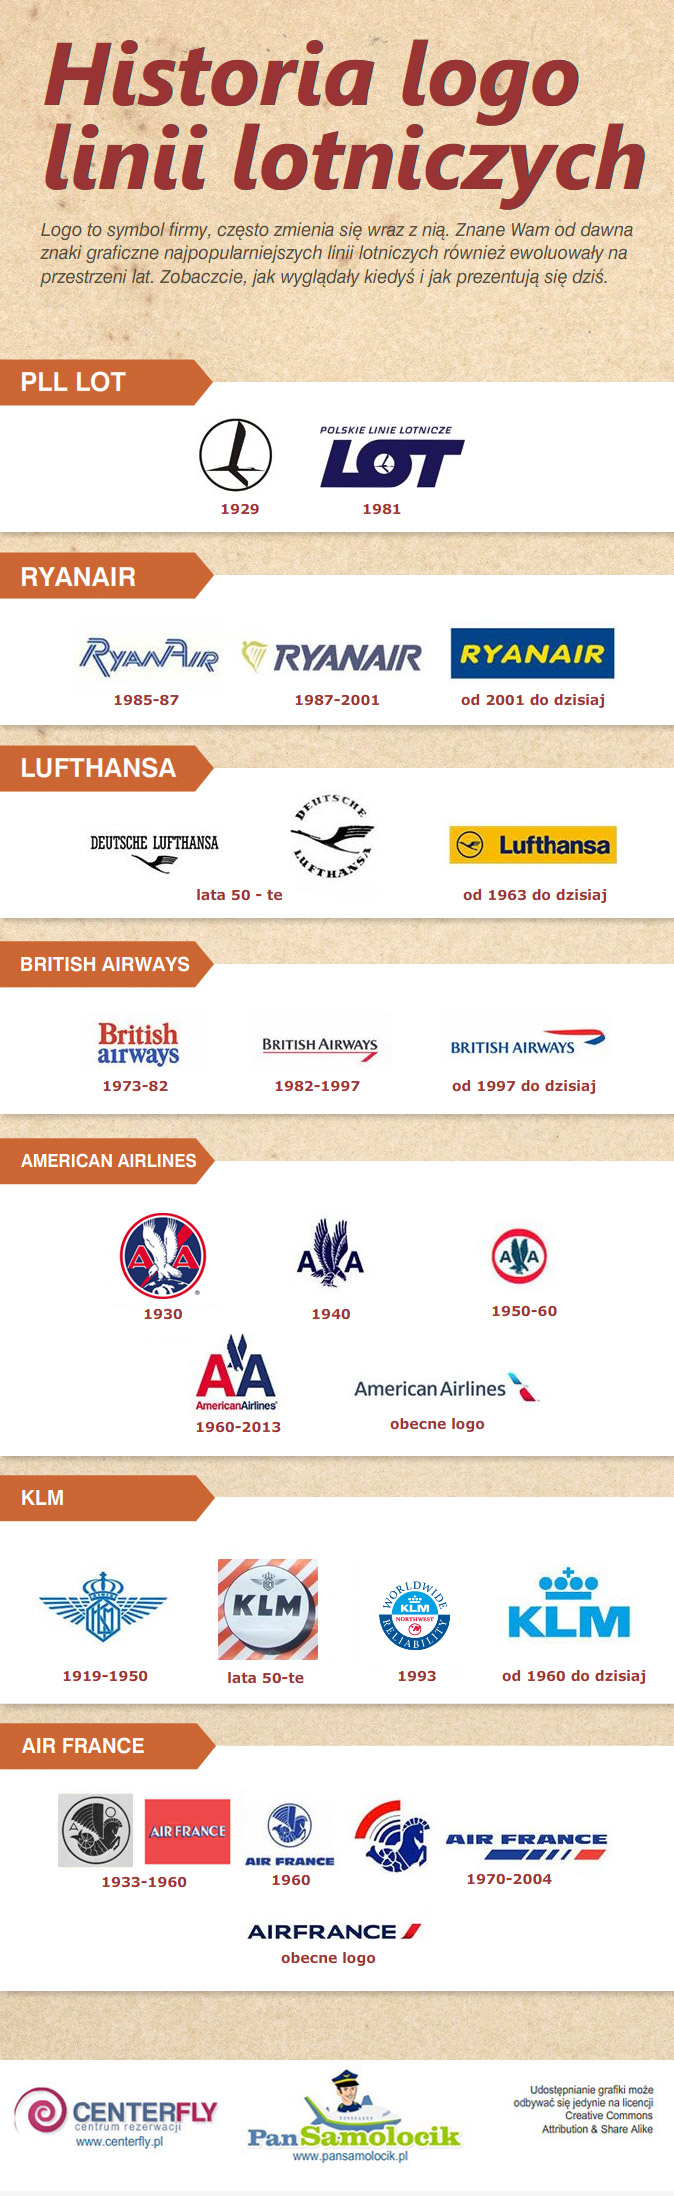 Jaka jest historia logo linii lotniczych